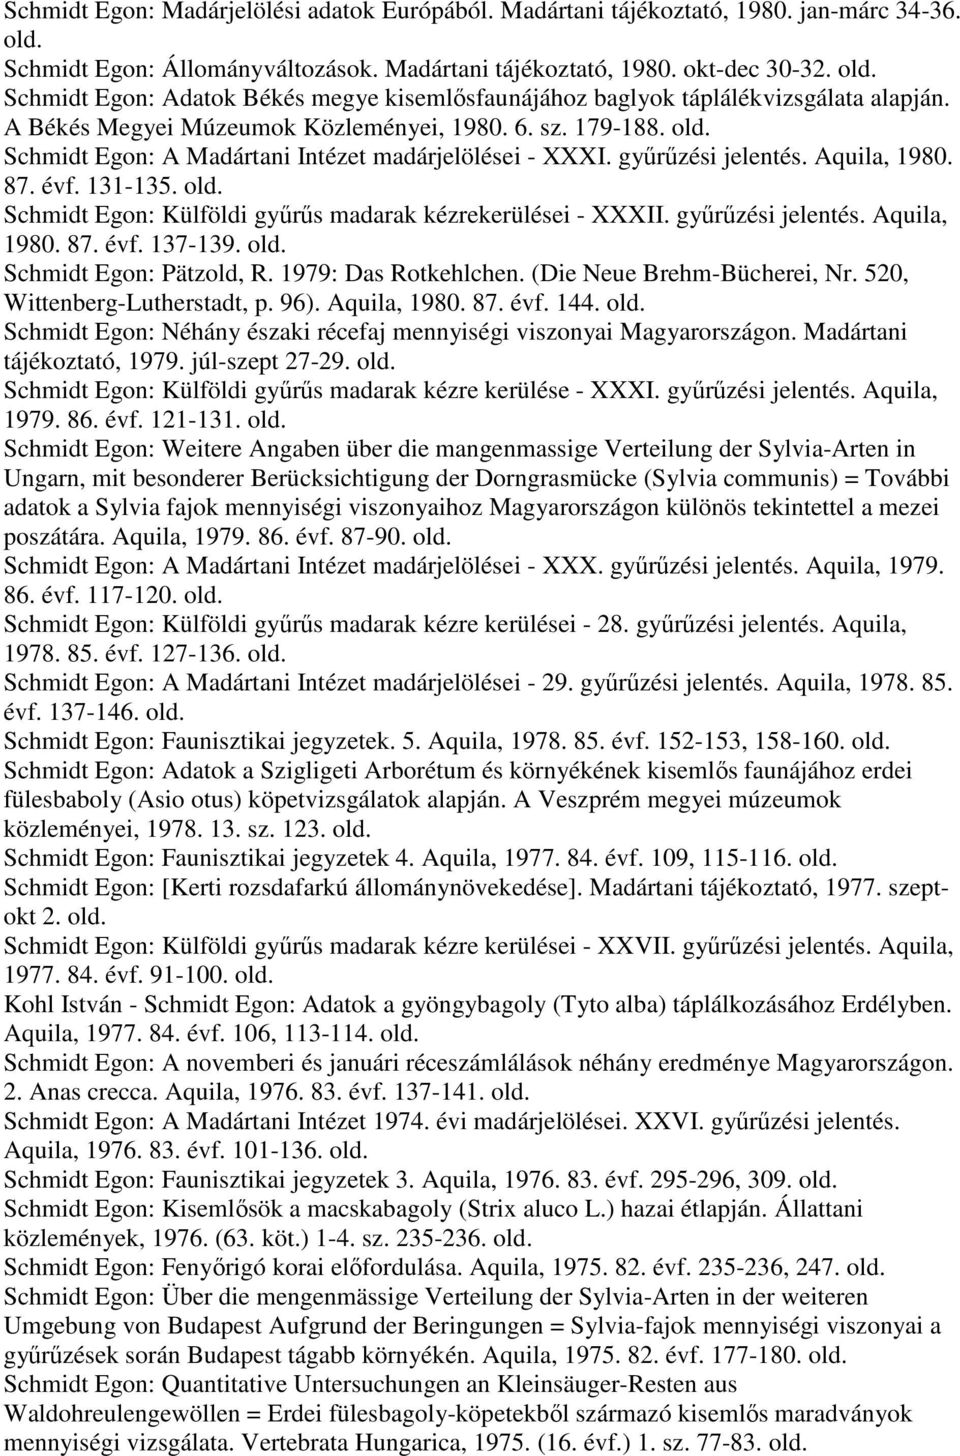 Schmidt Egon: A Madártani Intézet madárjelölései - XXXI. gyűrűzési jelentés. Aquila, 1980. 87. évf. 131-135. Schmidt Egon: Külföldi gyűrűs madarak kézrekerülései - XXXII. gyűrűzési jelentés. Aquila, 1980. 87. évf. 137-139.